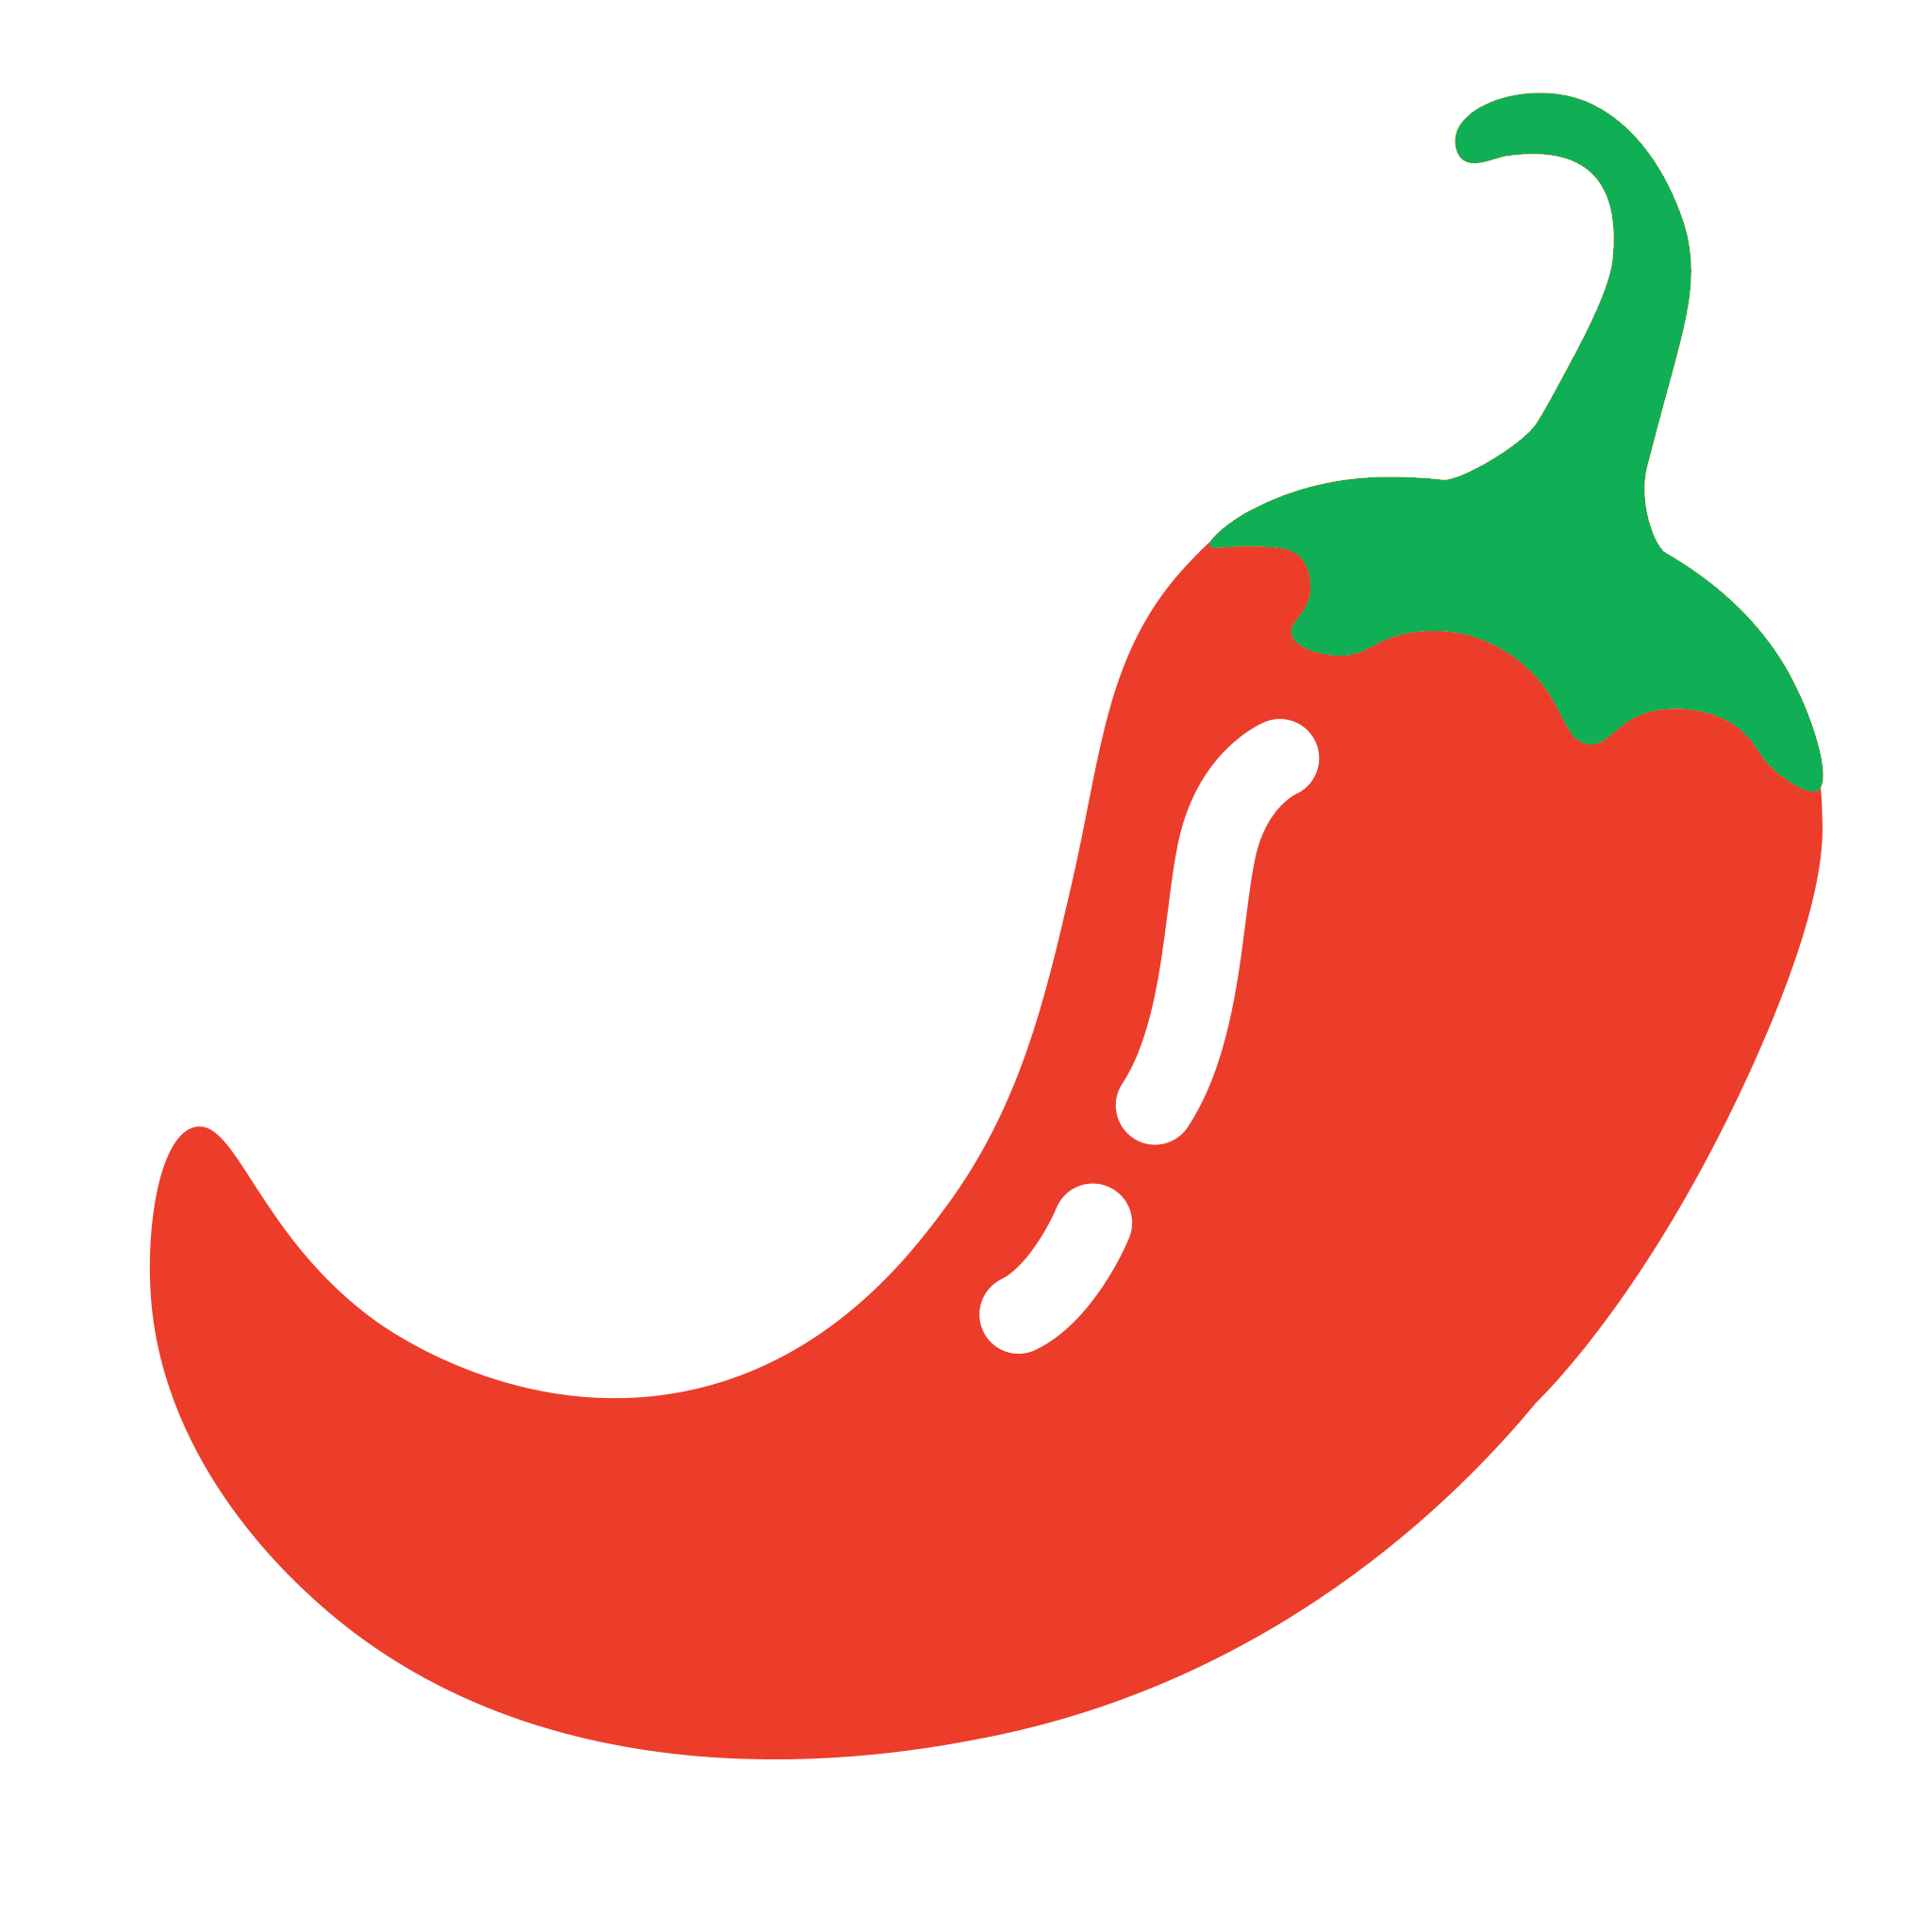 File:Chilli pepper 4.svg - Wikipedia